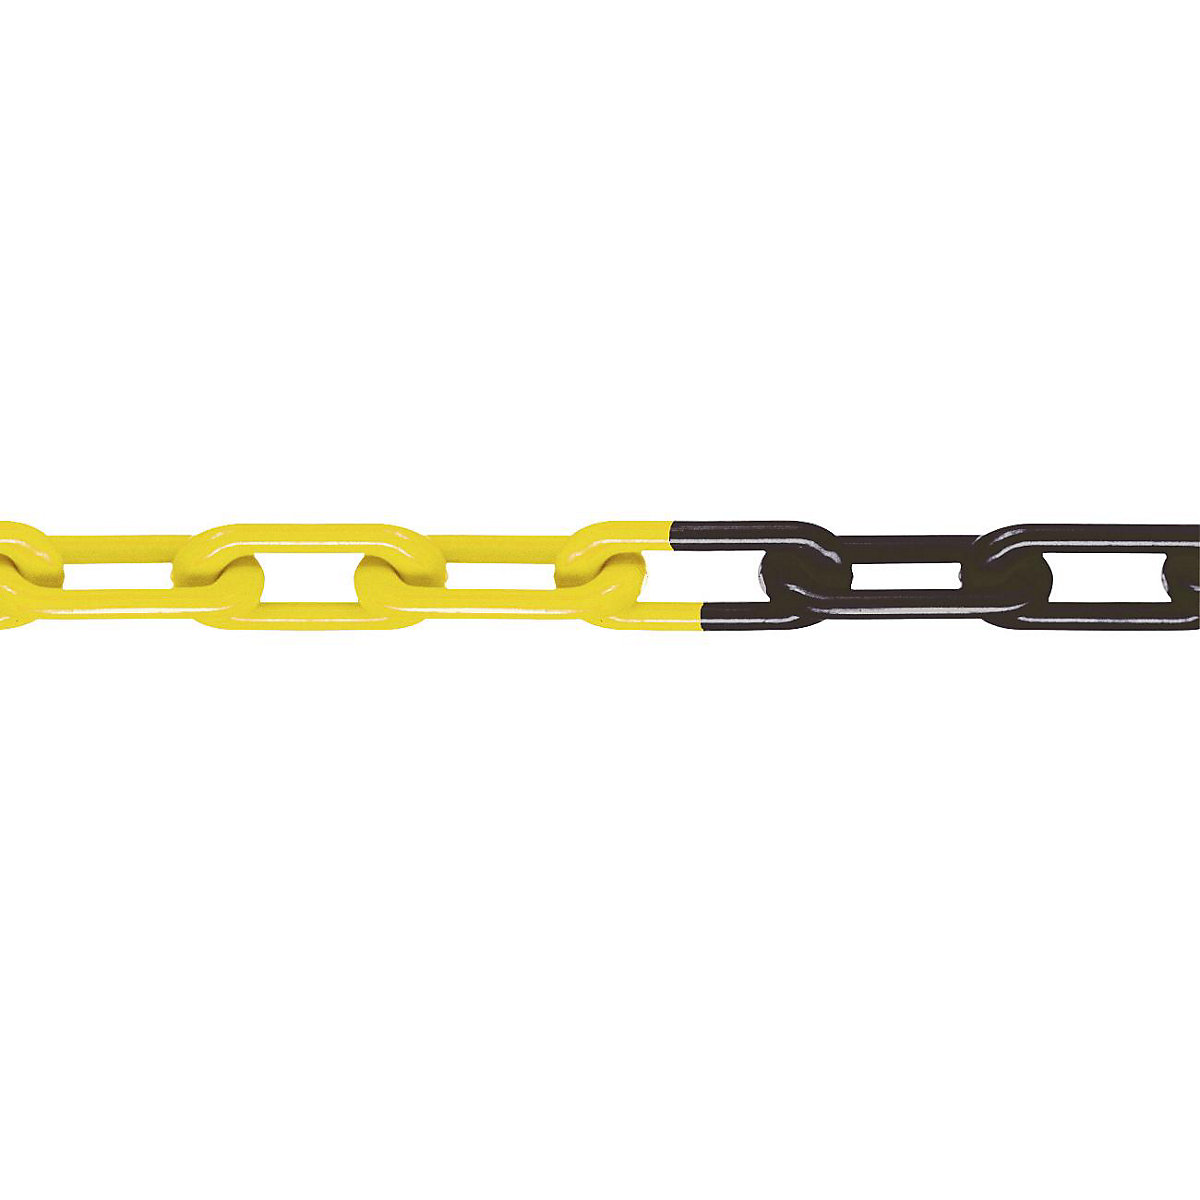 Kvalitetni najlonski lanac, kvaliteta MNK 8, dužina sklopa 25 m, u crnožutoj boji, od 4 komada-3